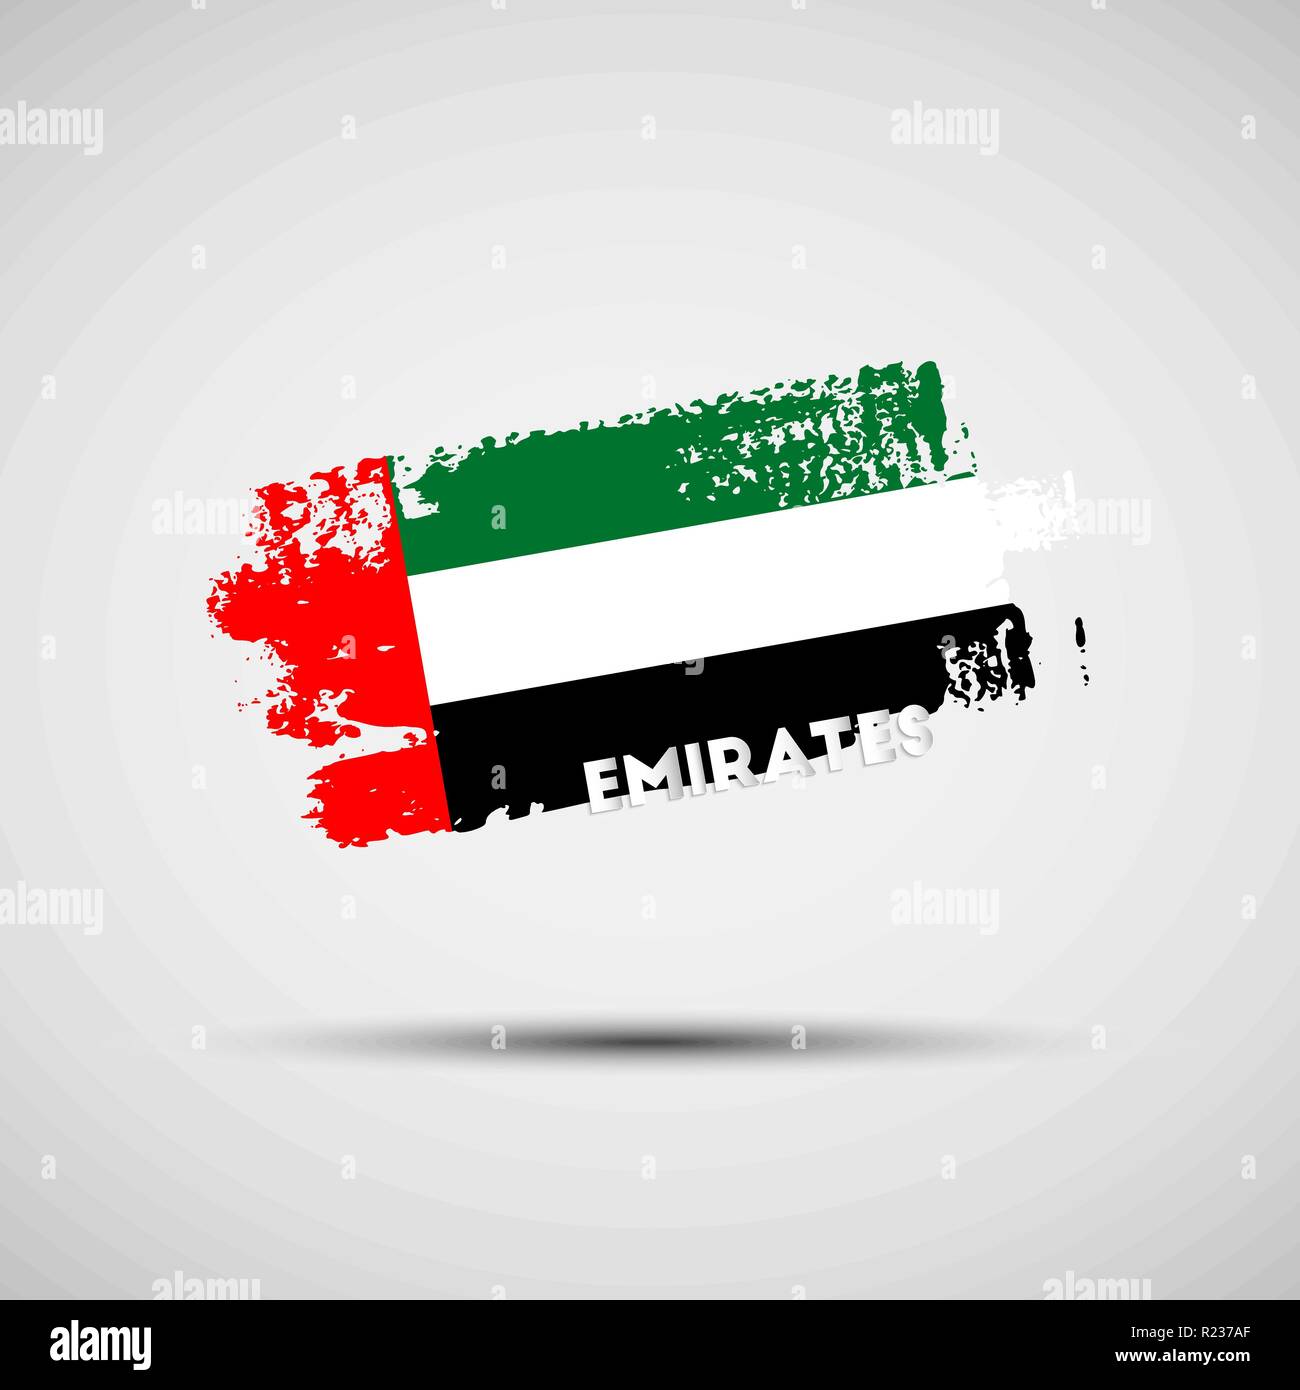 Flagge der Vereinigten Arabischen Emirate. Vector Illustration von Grunge Pinselstrich mit UAE National Flagge Farben für Ihre Grafik- und Webdesign Stock Vektor